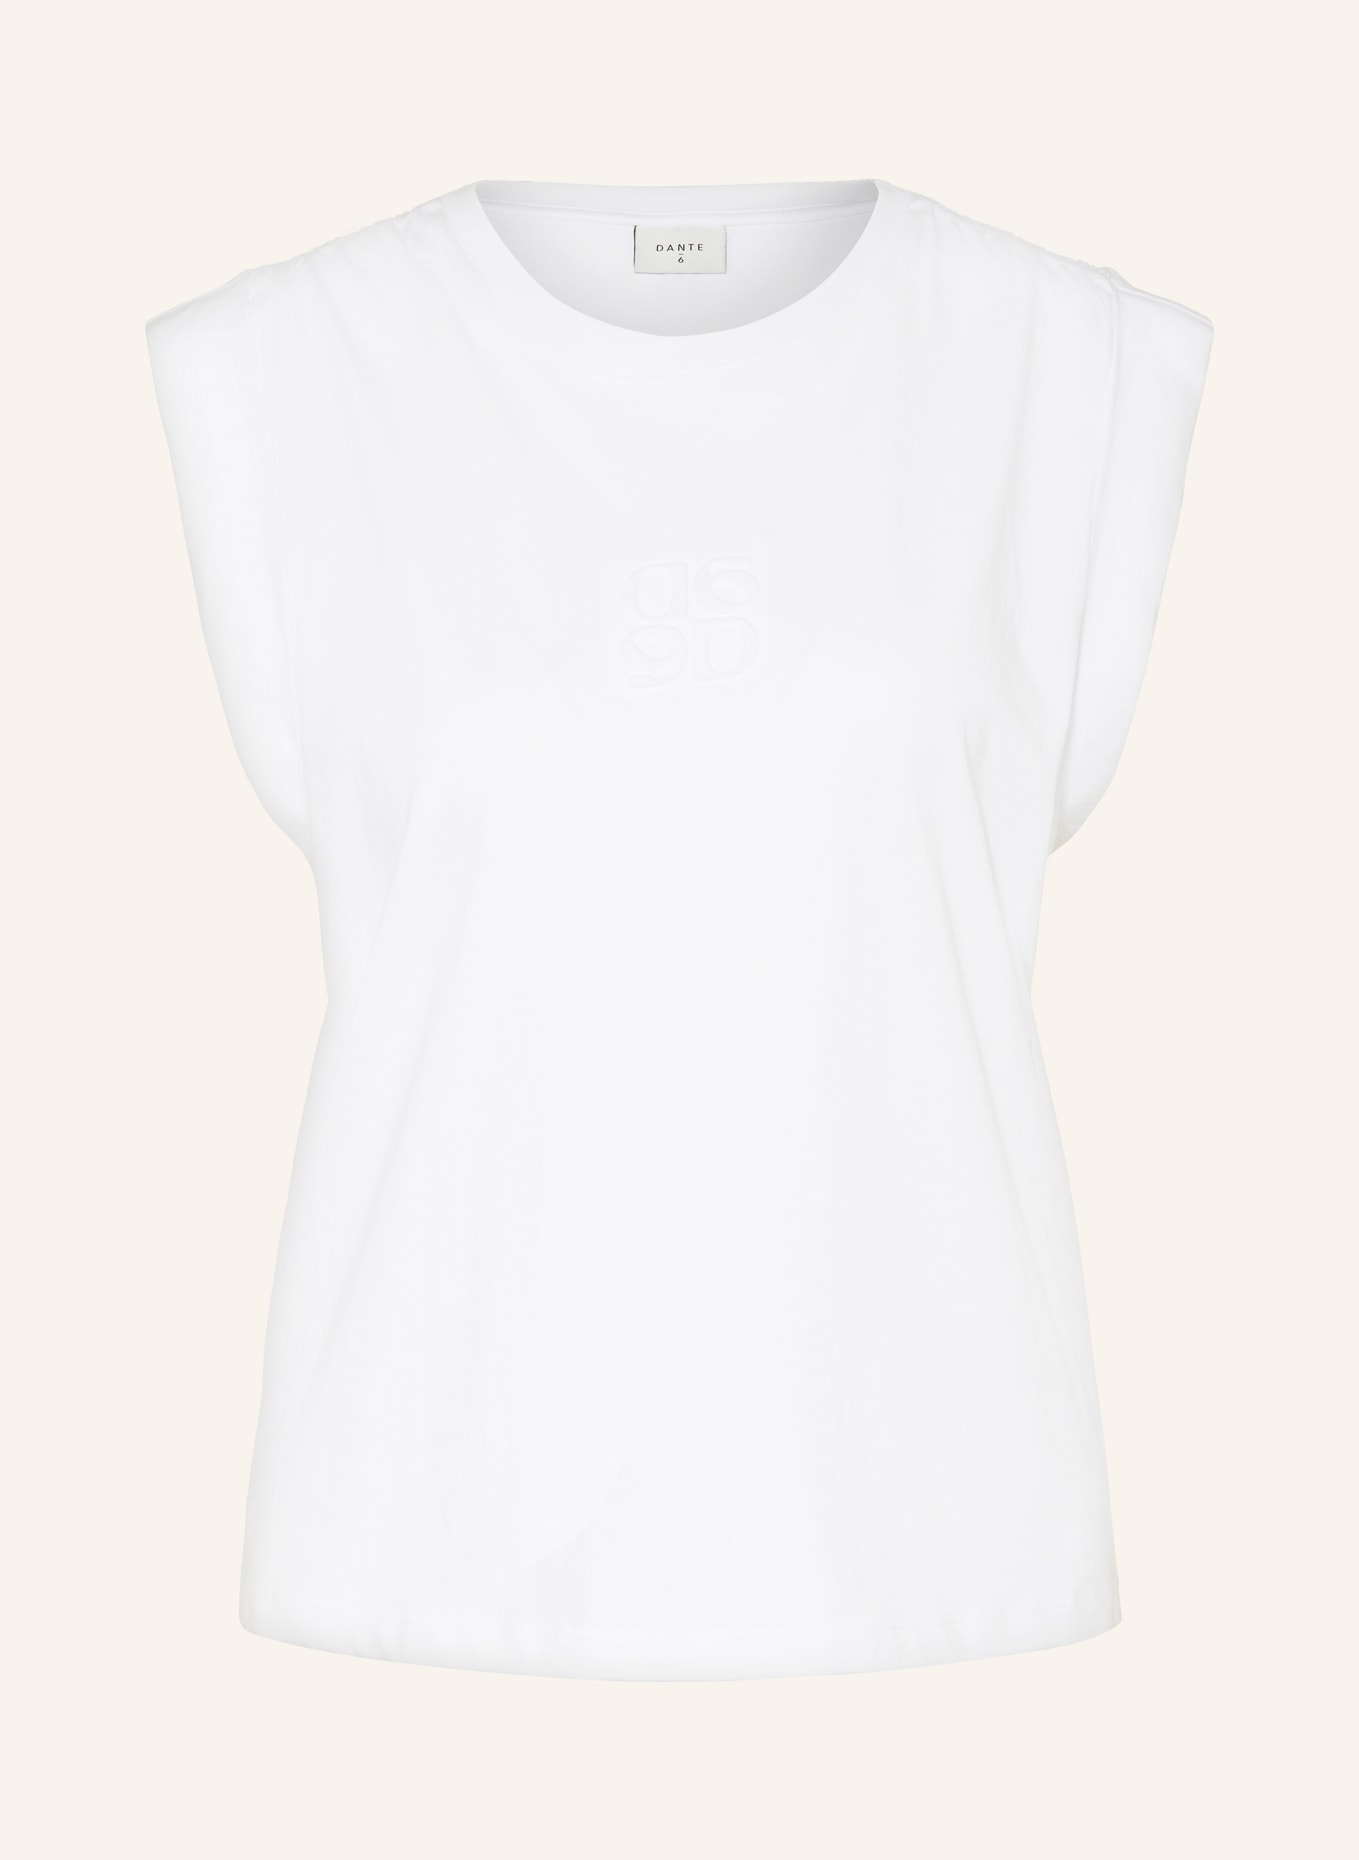 DANTE6 T-Shirt SPARROW, Farbe: WEISS (Bild 1)